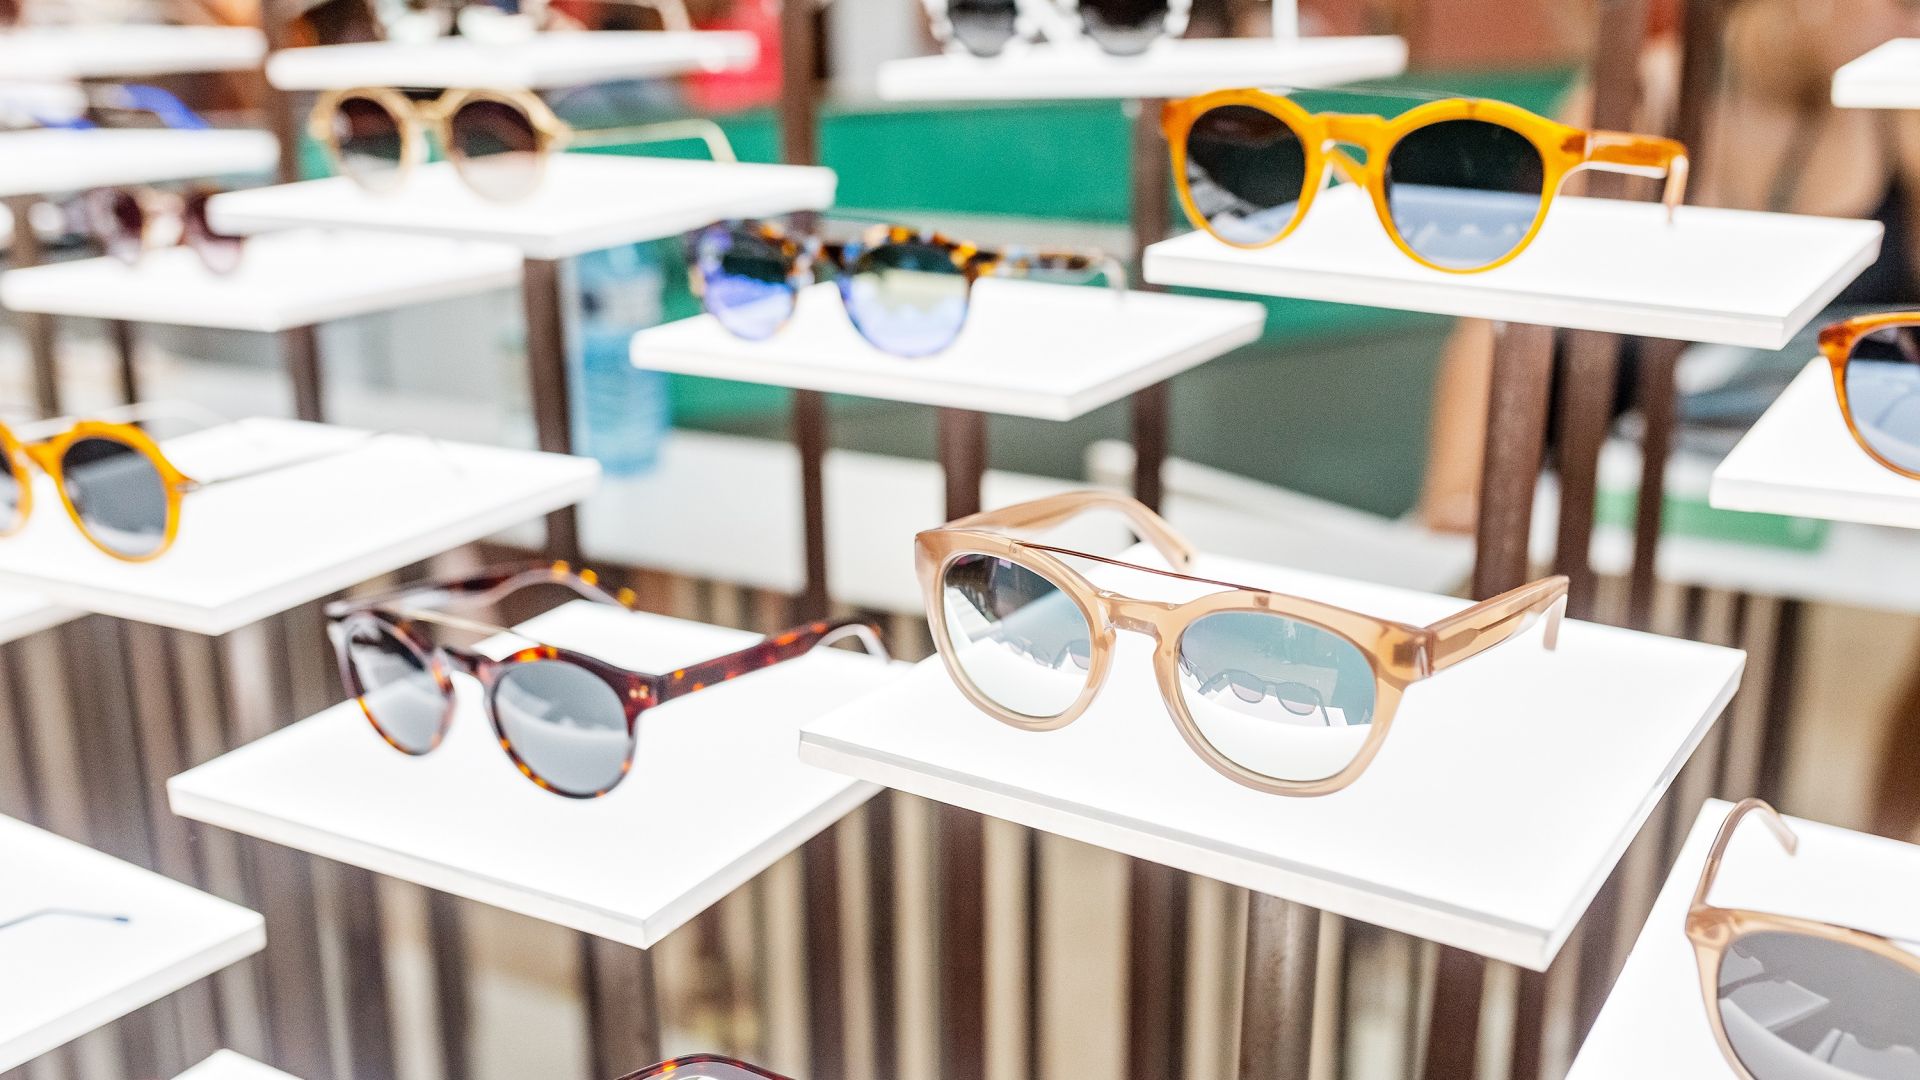 Започват проверки за безопасно лято. Как да изберем слънчеви очила?